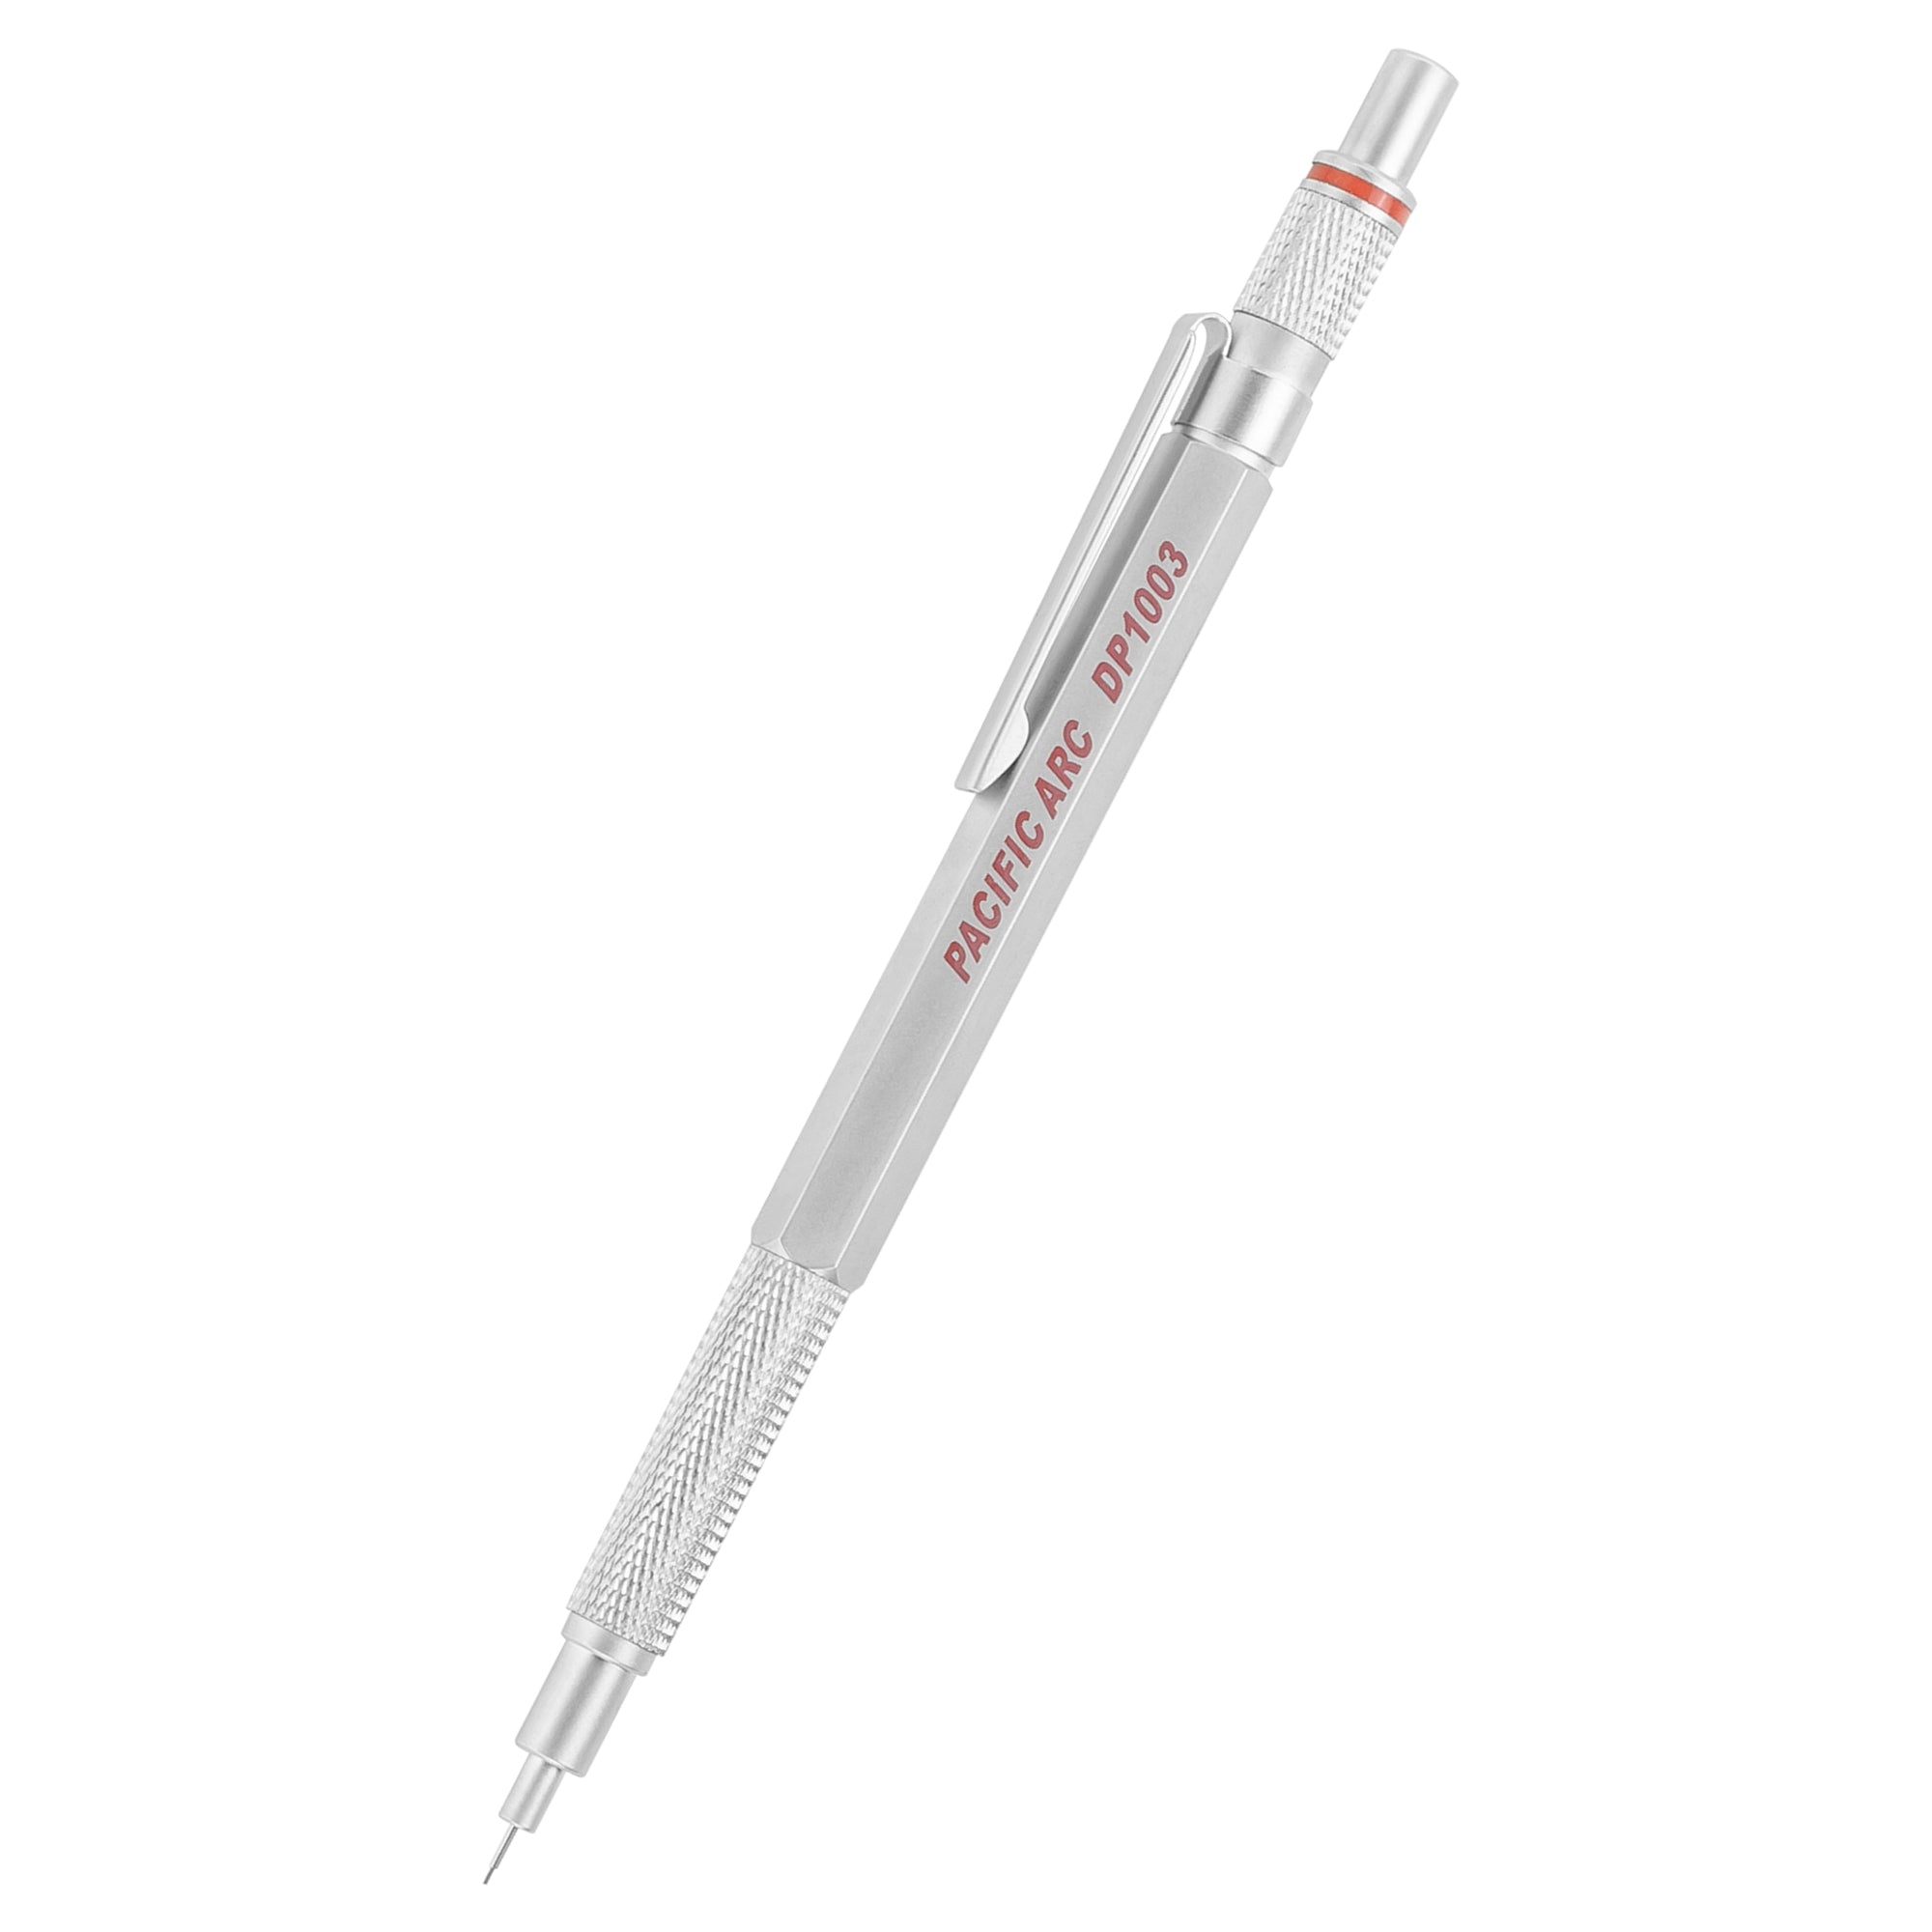 Kohinoor Rapidograph Stainless Steel Technical Pen 0.25 mm (3X0) - Delta Art